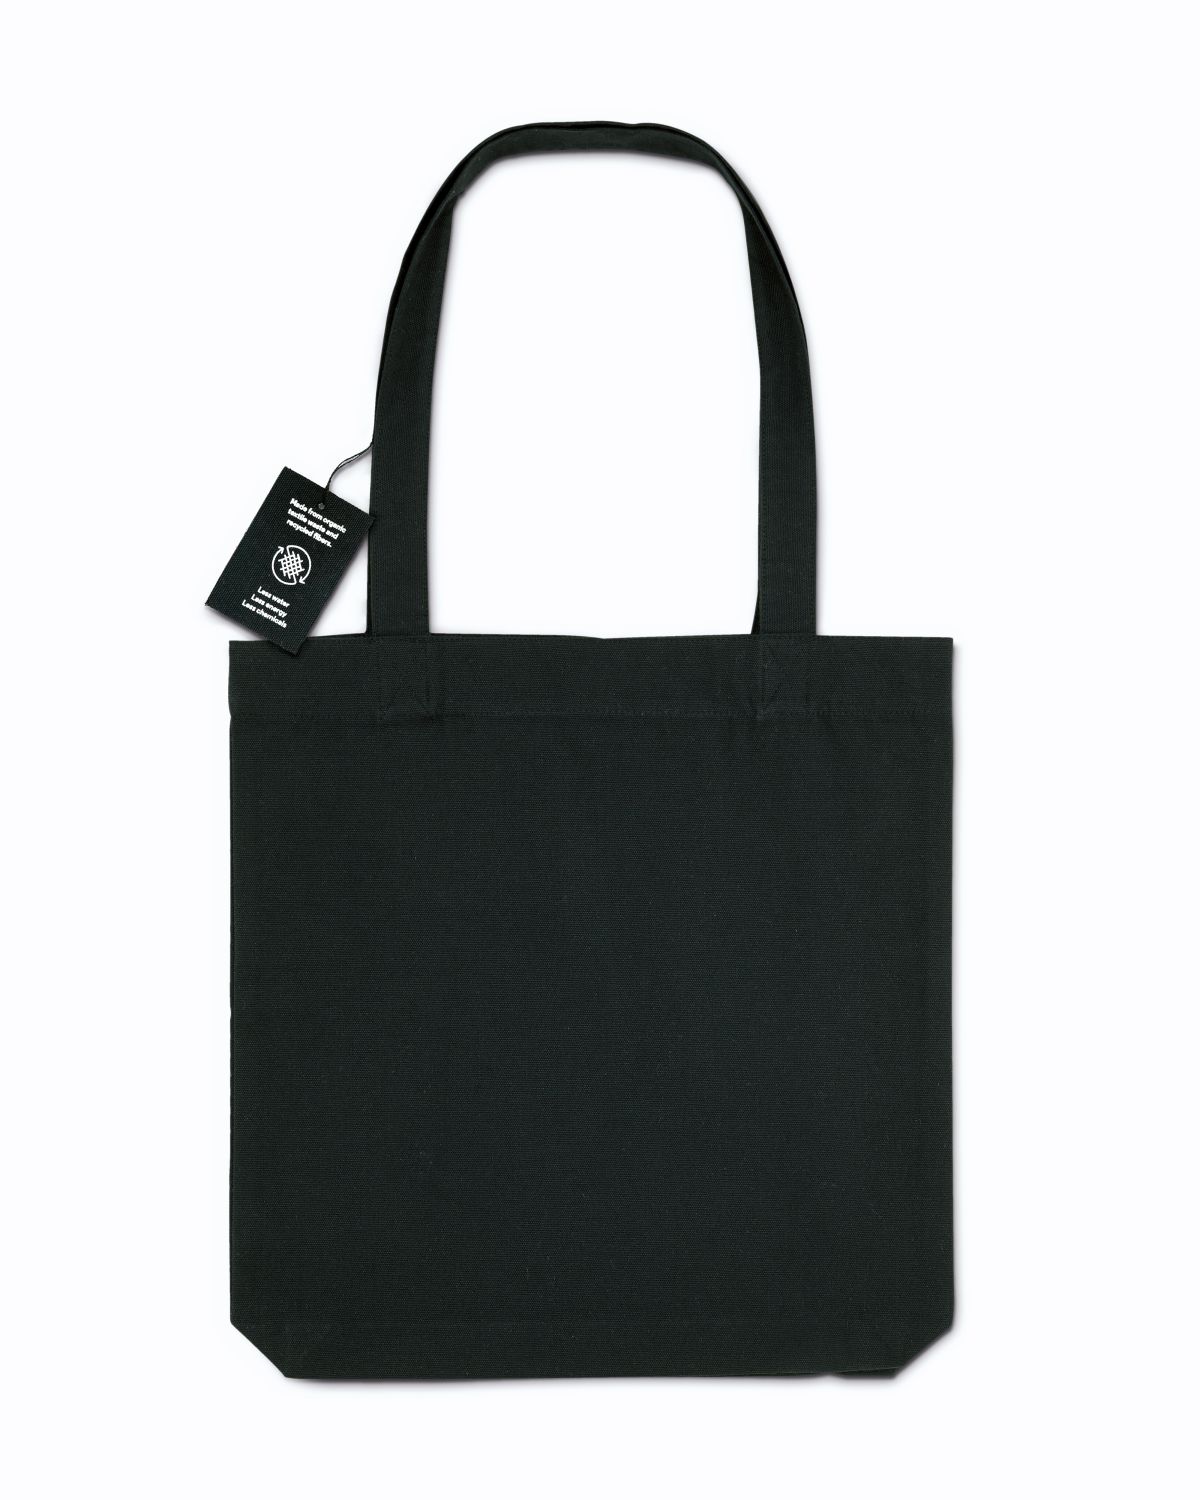 Látková nákupní taška Stanley & Stella RE-Tote Bag - black, univerzální